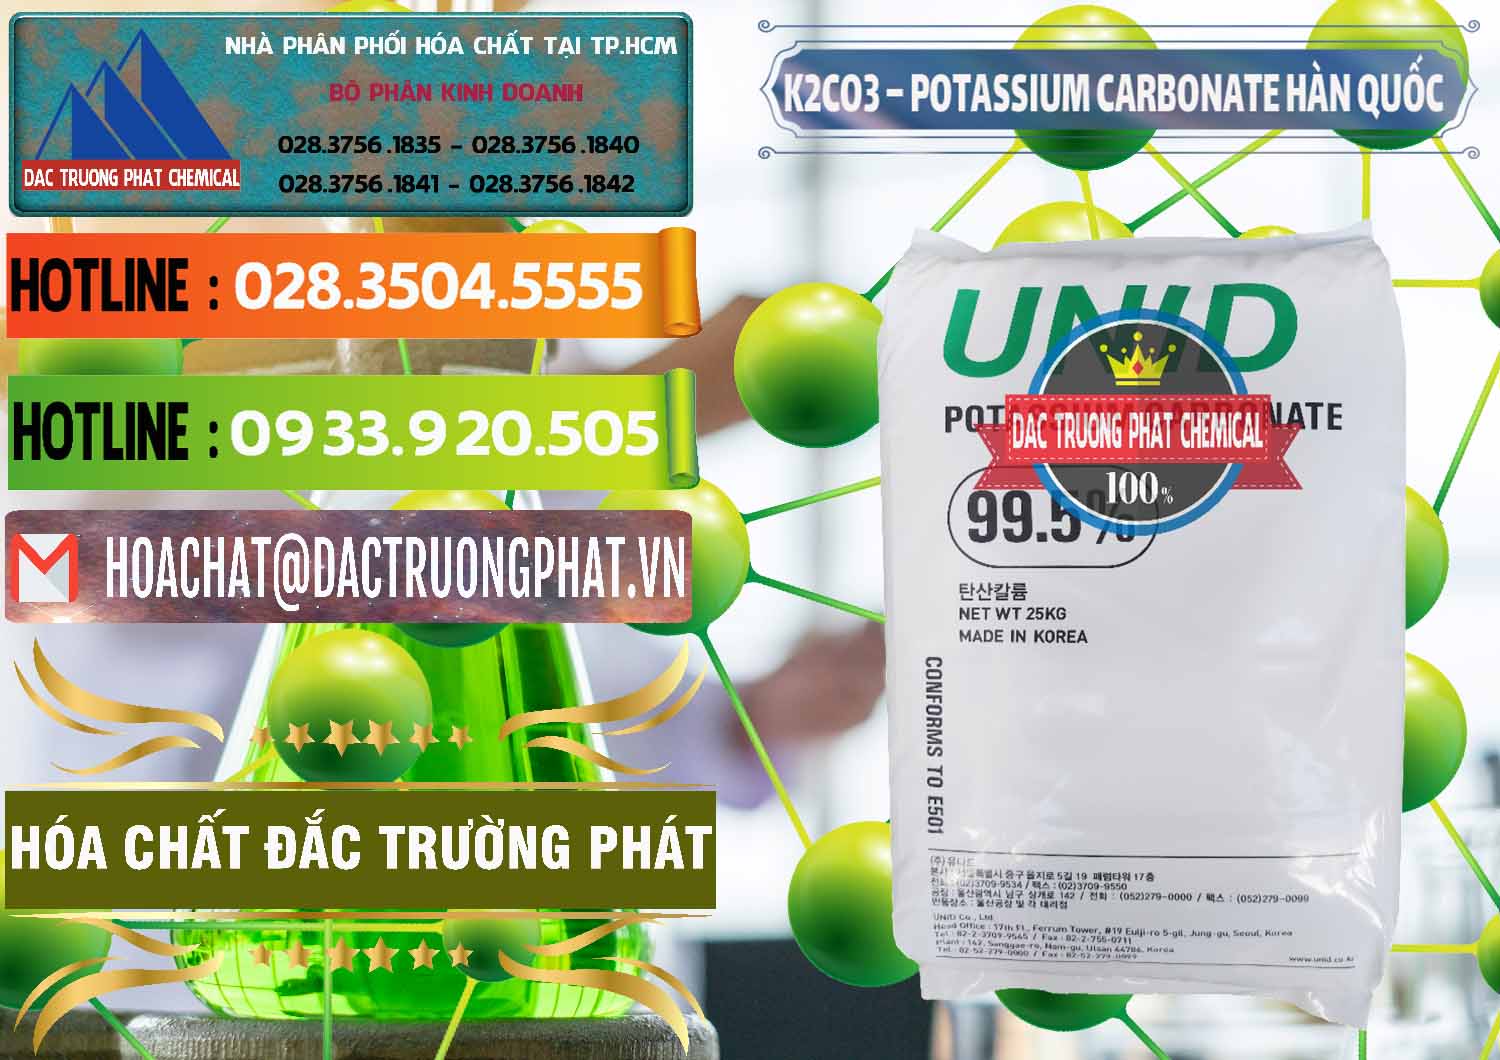 Nhập khẩu và bán K2Co3 – Potassium Carbonate Unid Hàn Quốc Korea - 0081 - Đơn vị kinh doanh và phân phối hóa chất tại TP.HCM - cungcaphoachat.com.vn